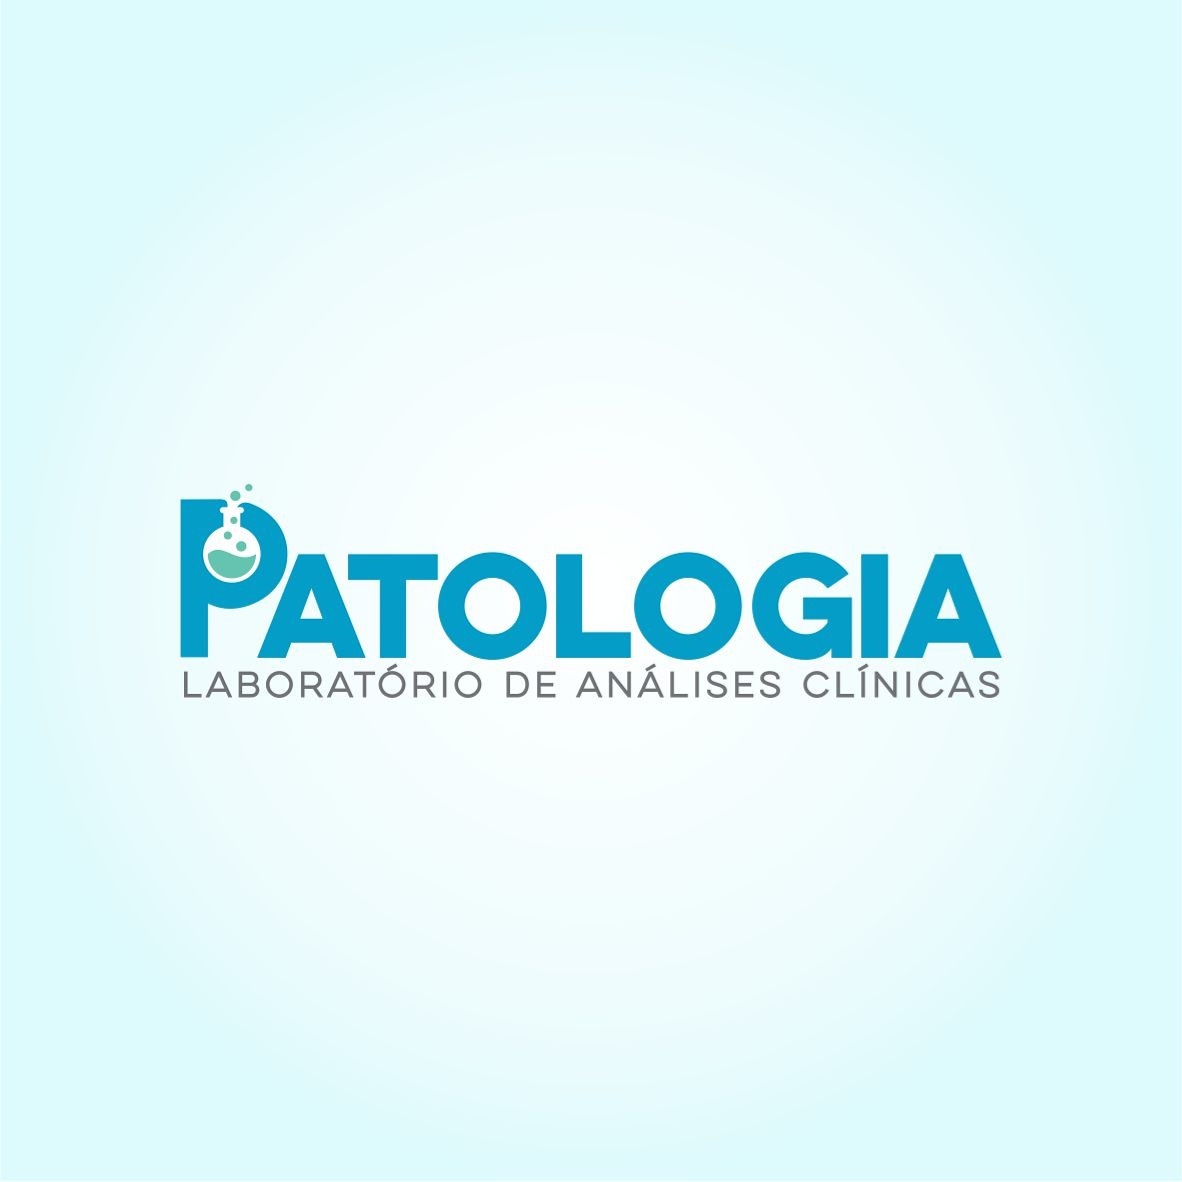 Patologia Laboratório de Análises Clínicas